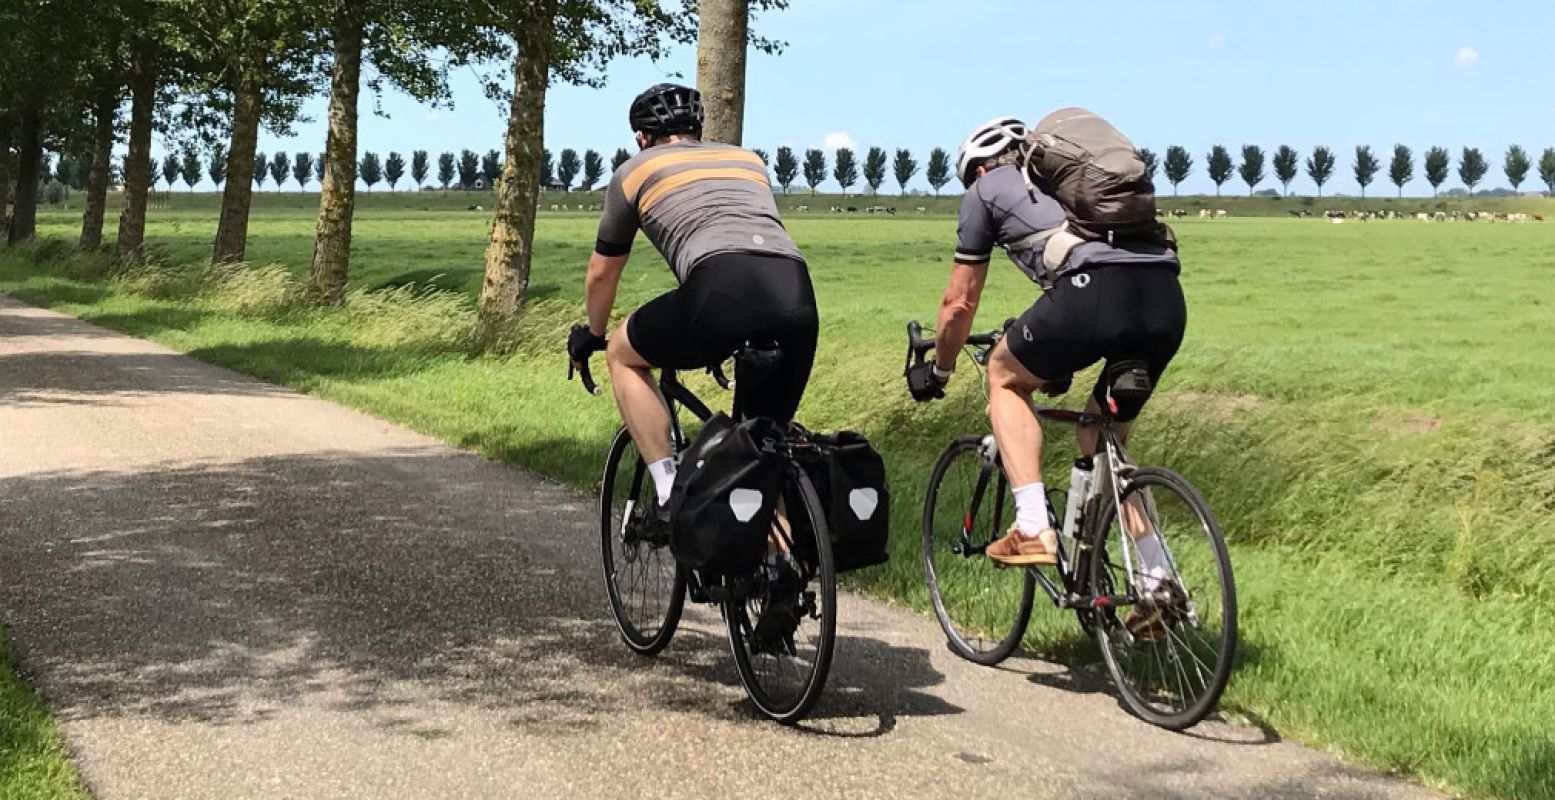 De landschappen van Nederland lenen zich perfect voor een lange fietsroute. Bijvoorbeeld langs alle werelderfgoederen van het land! Foto: UNESCO Werelderfgoed Nederland